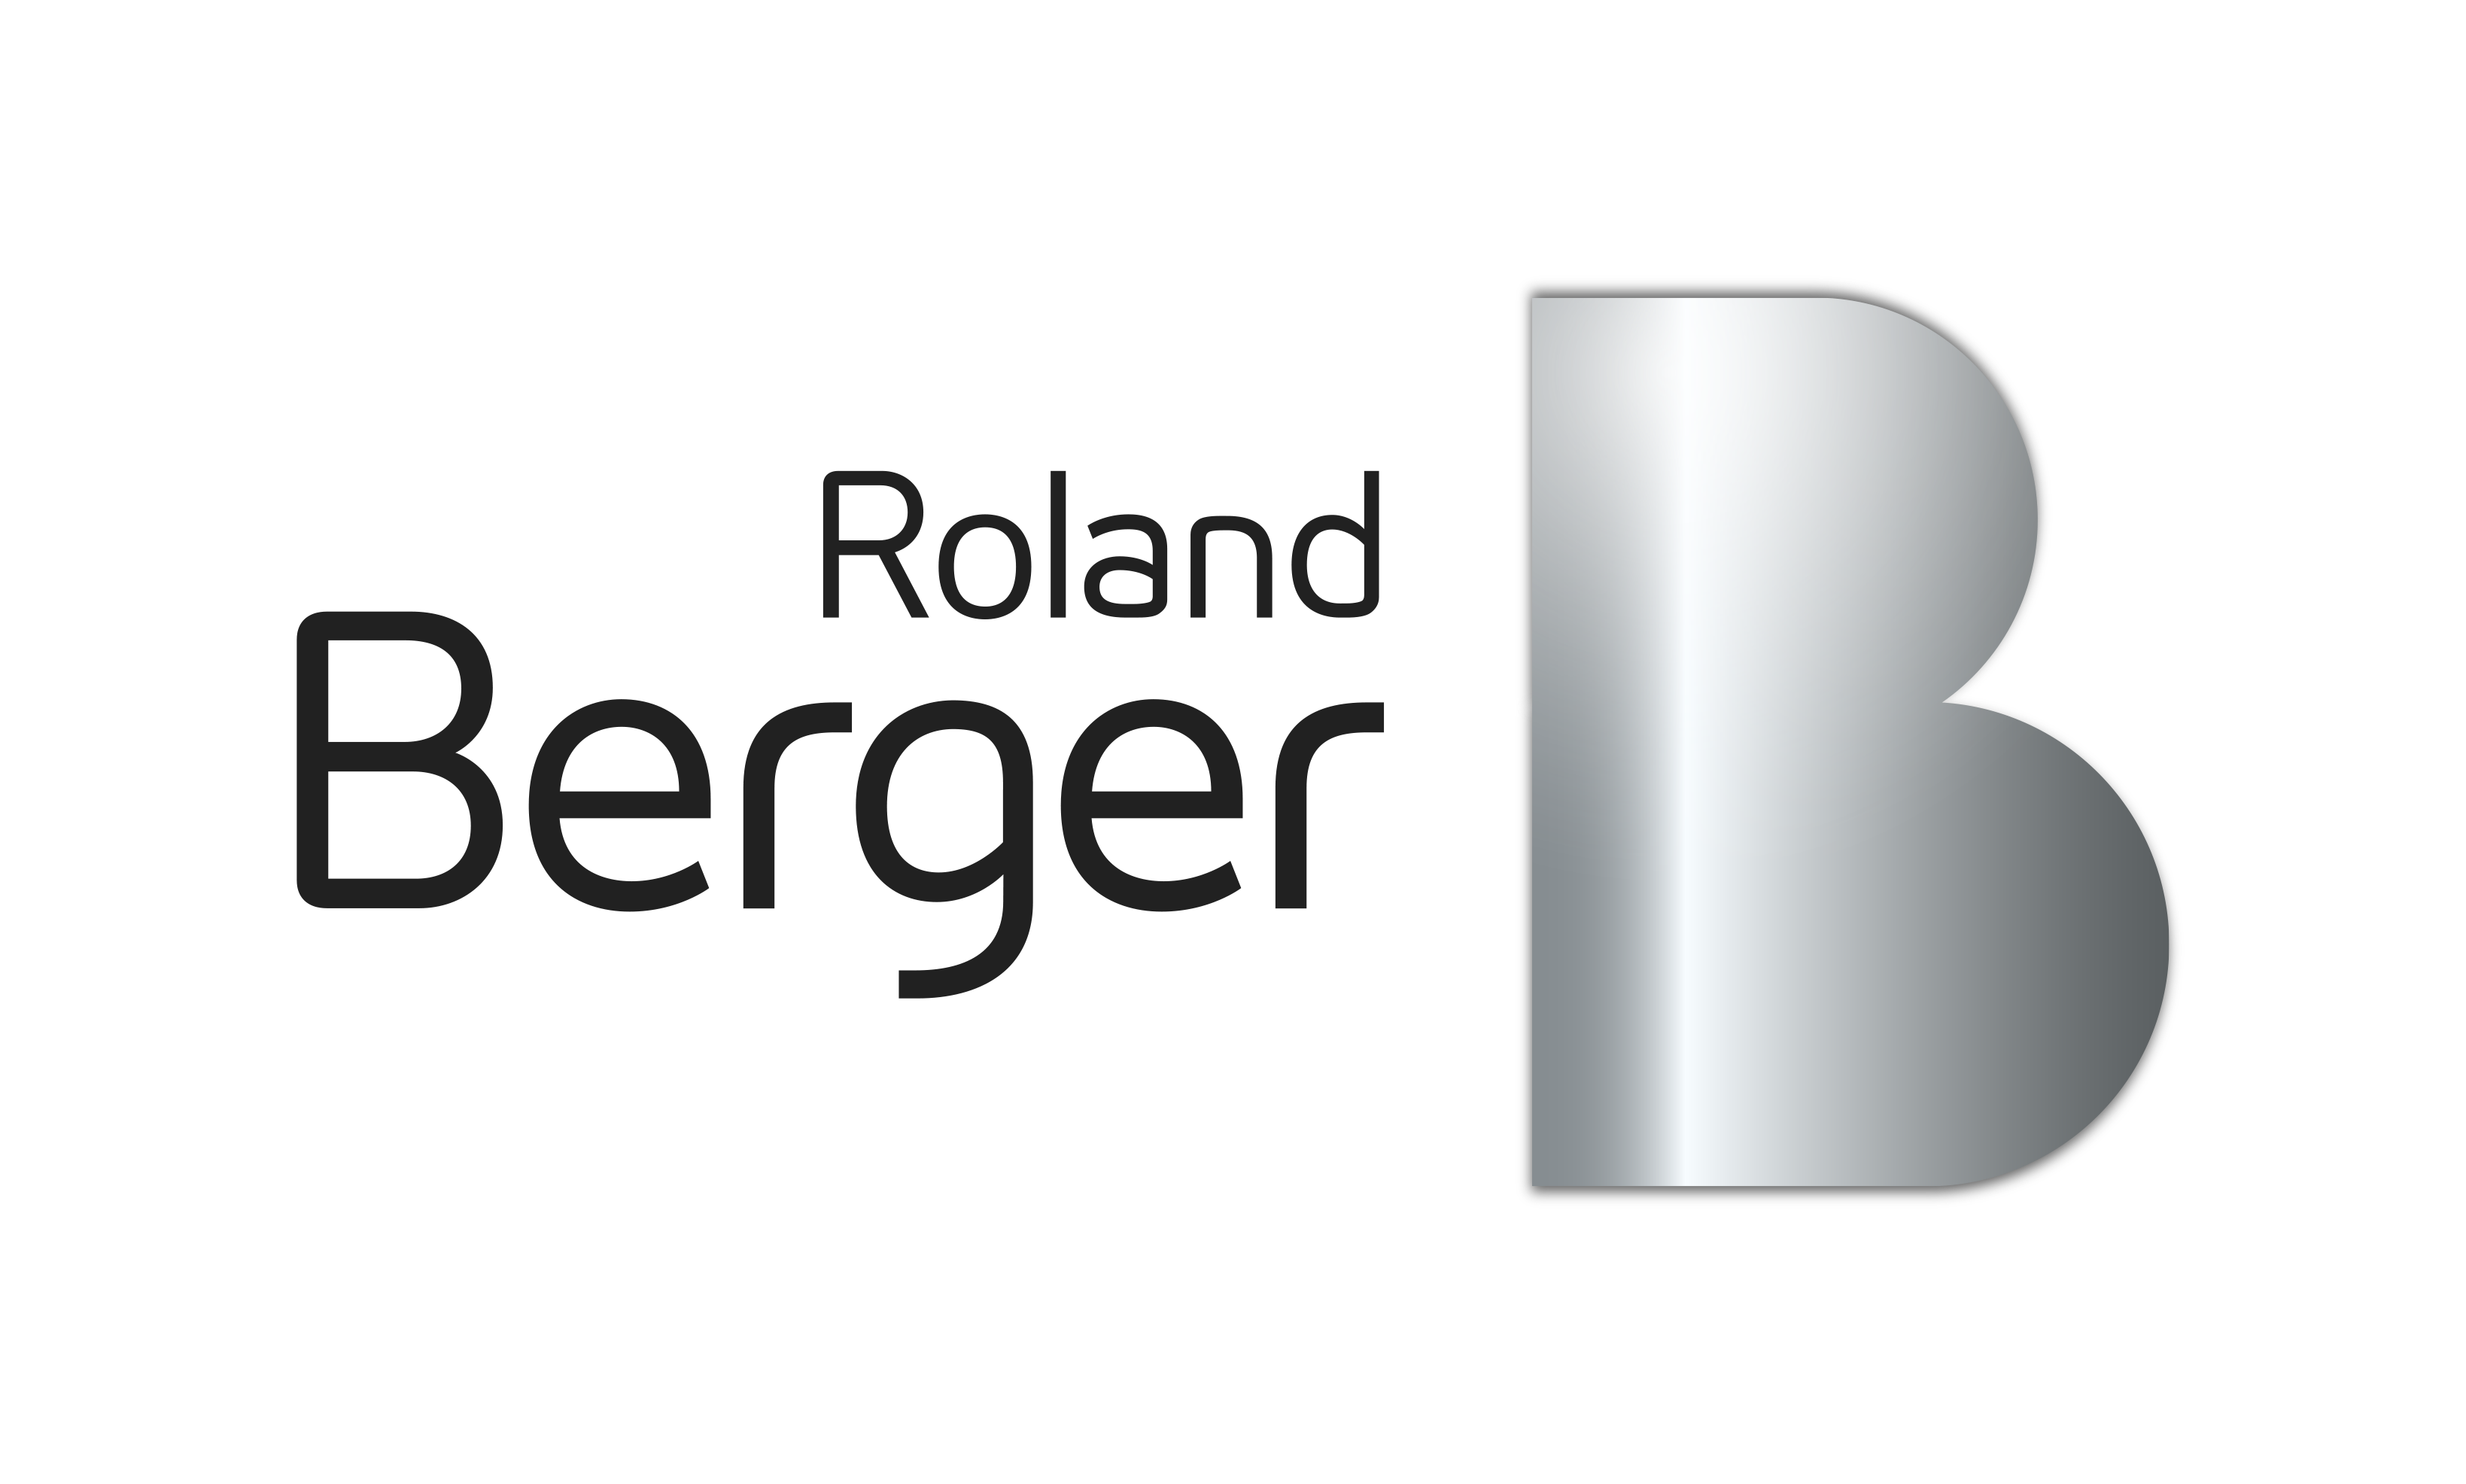 Roland Berger